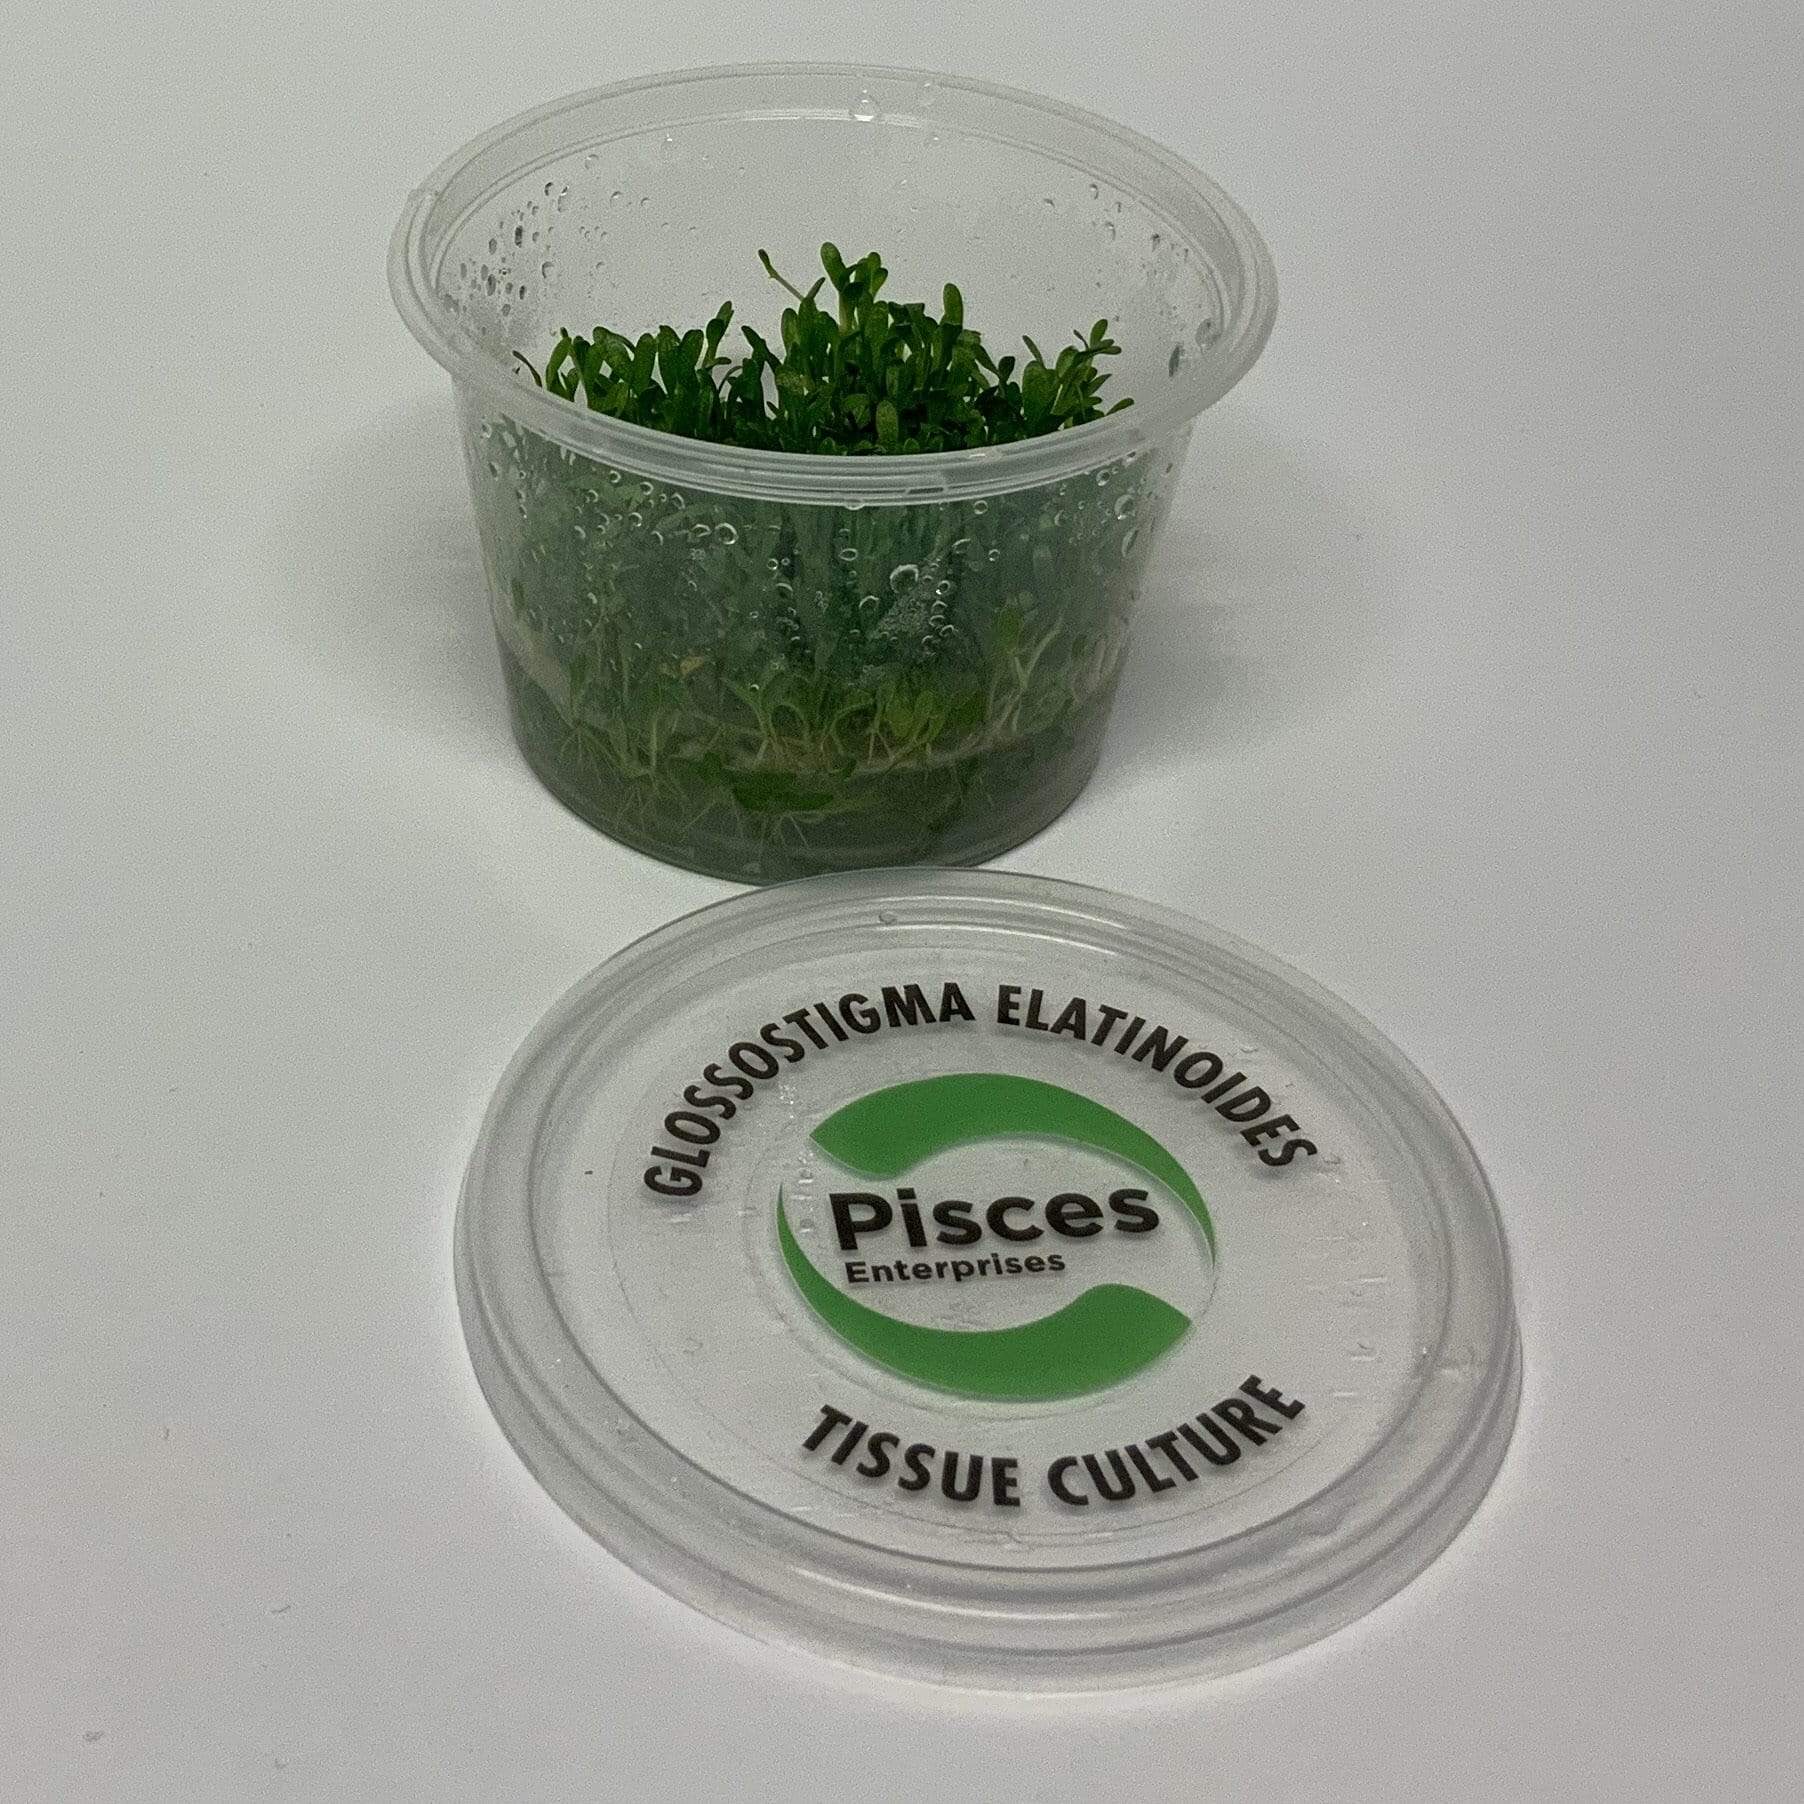 Pisces Enterprises Tissue Culture Glossostigma elatinoides Tissue Culture